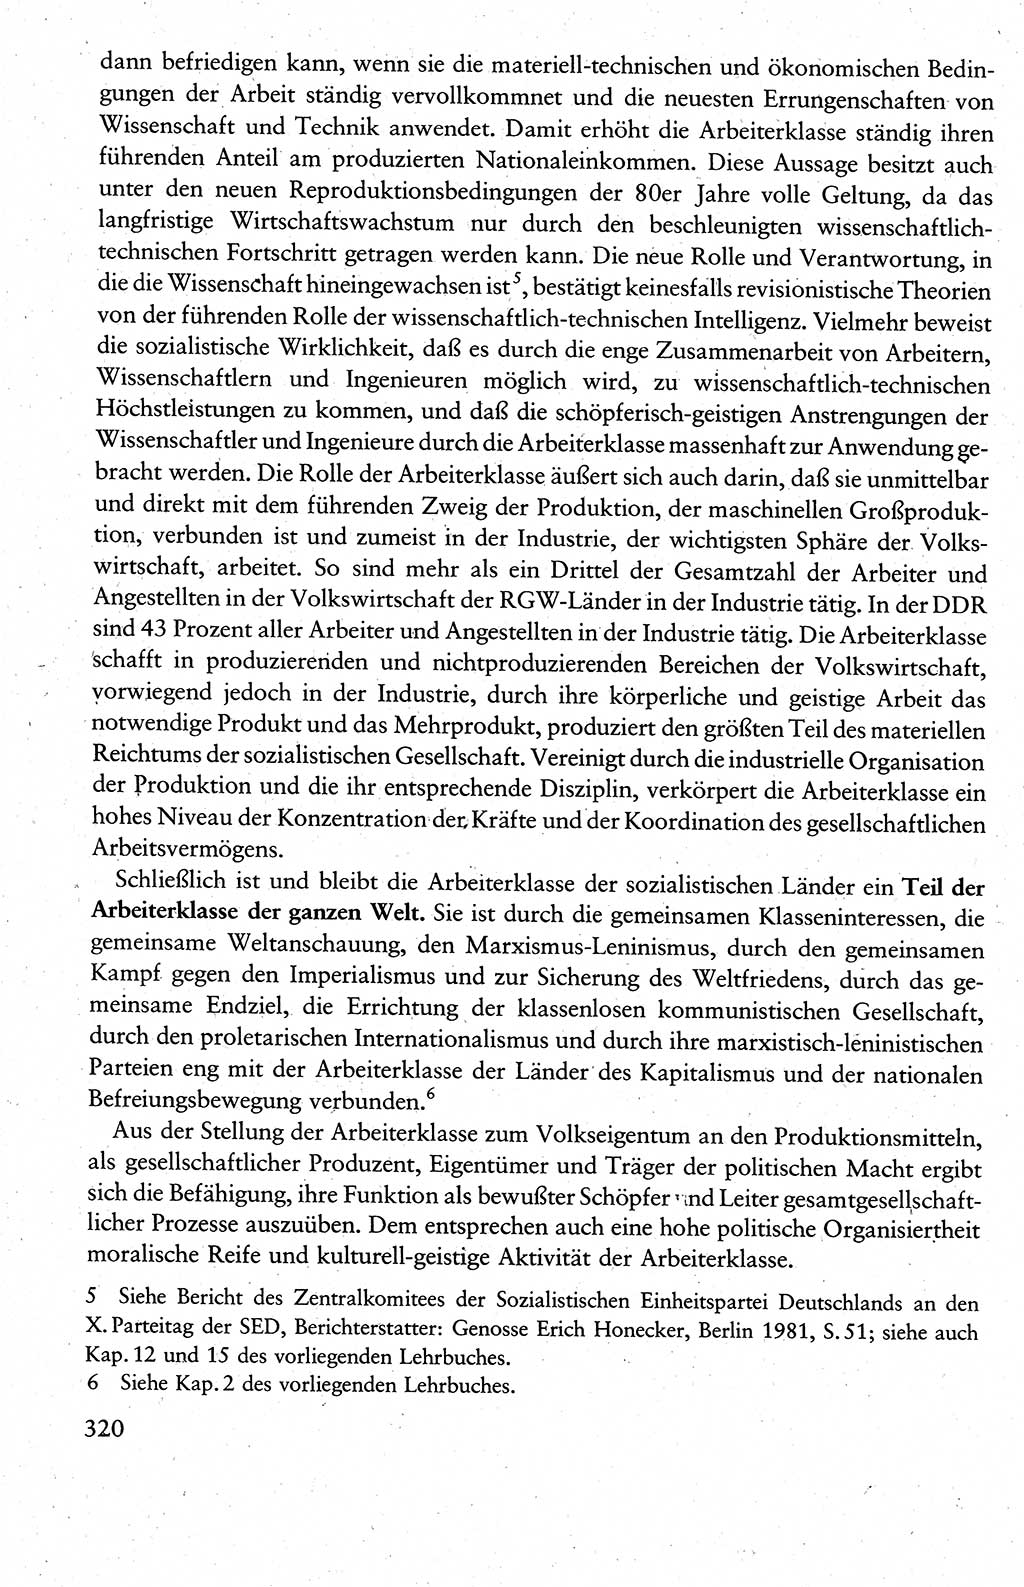 Wissenschaftlicher Kommunismus [Deutsche Demokratische Republik (DDR)], Lehrbuch für das marxistisch-leninistische Grundlagenstudium 1983, Seite 320 (Wiss. Komm. DDR Lb. 1983, S. 320)